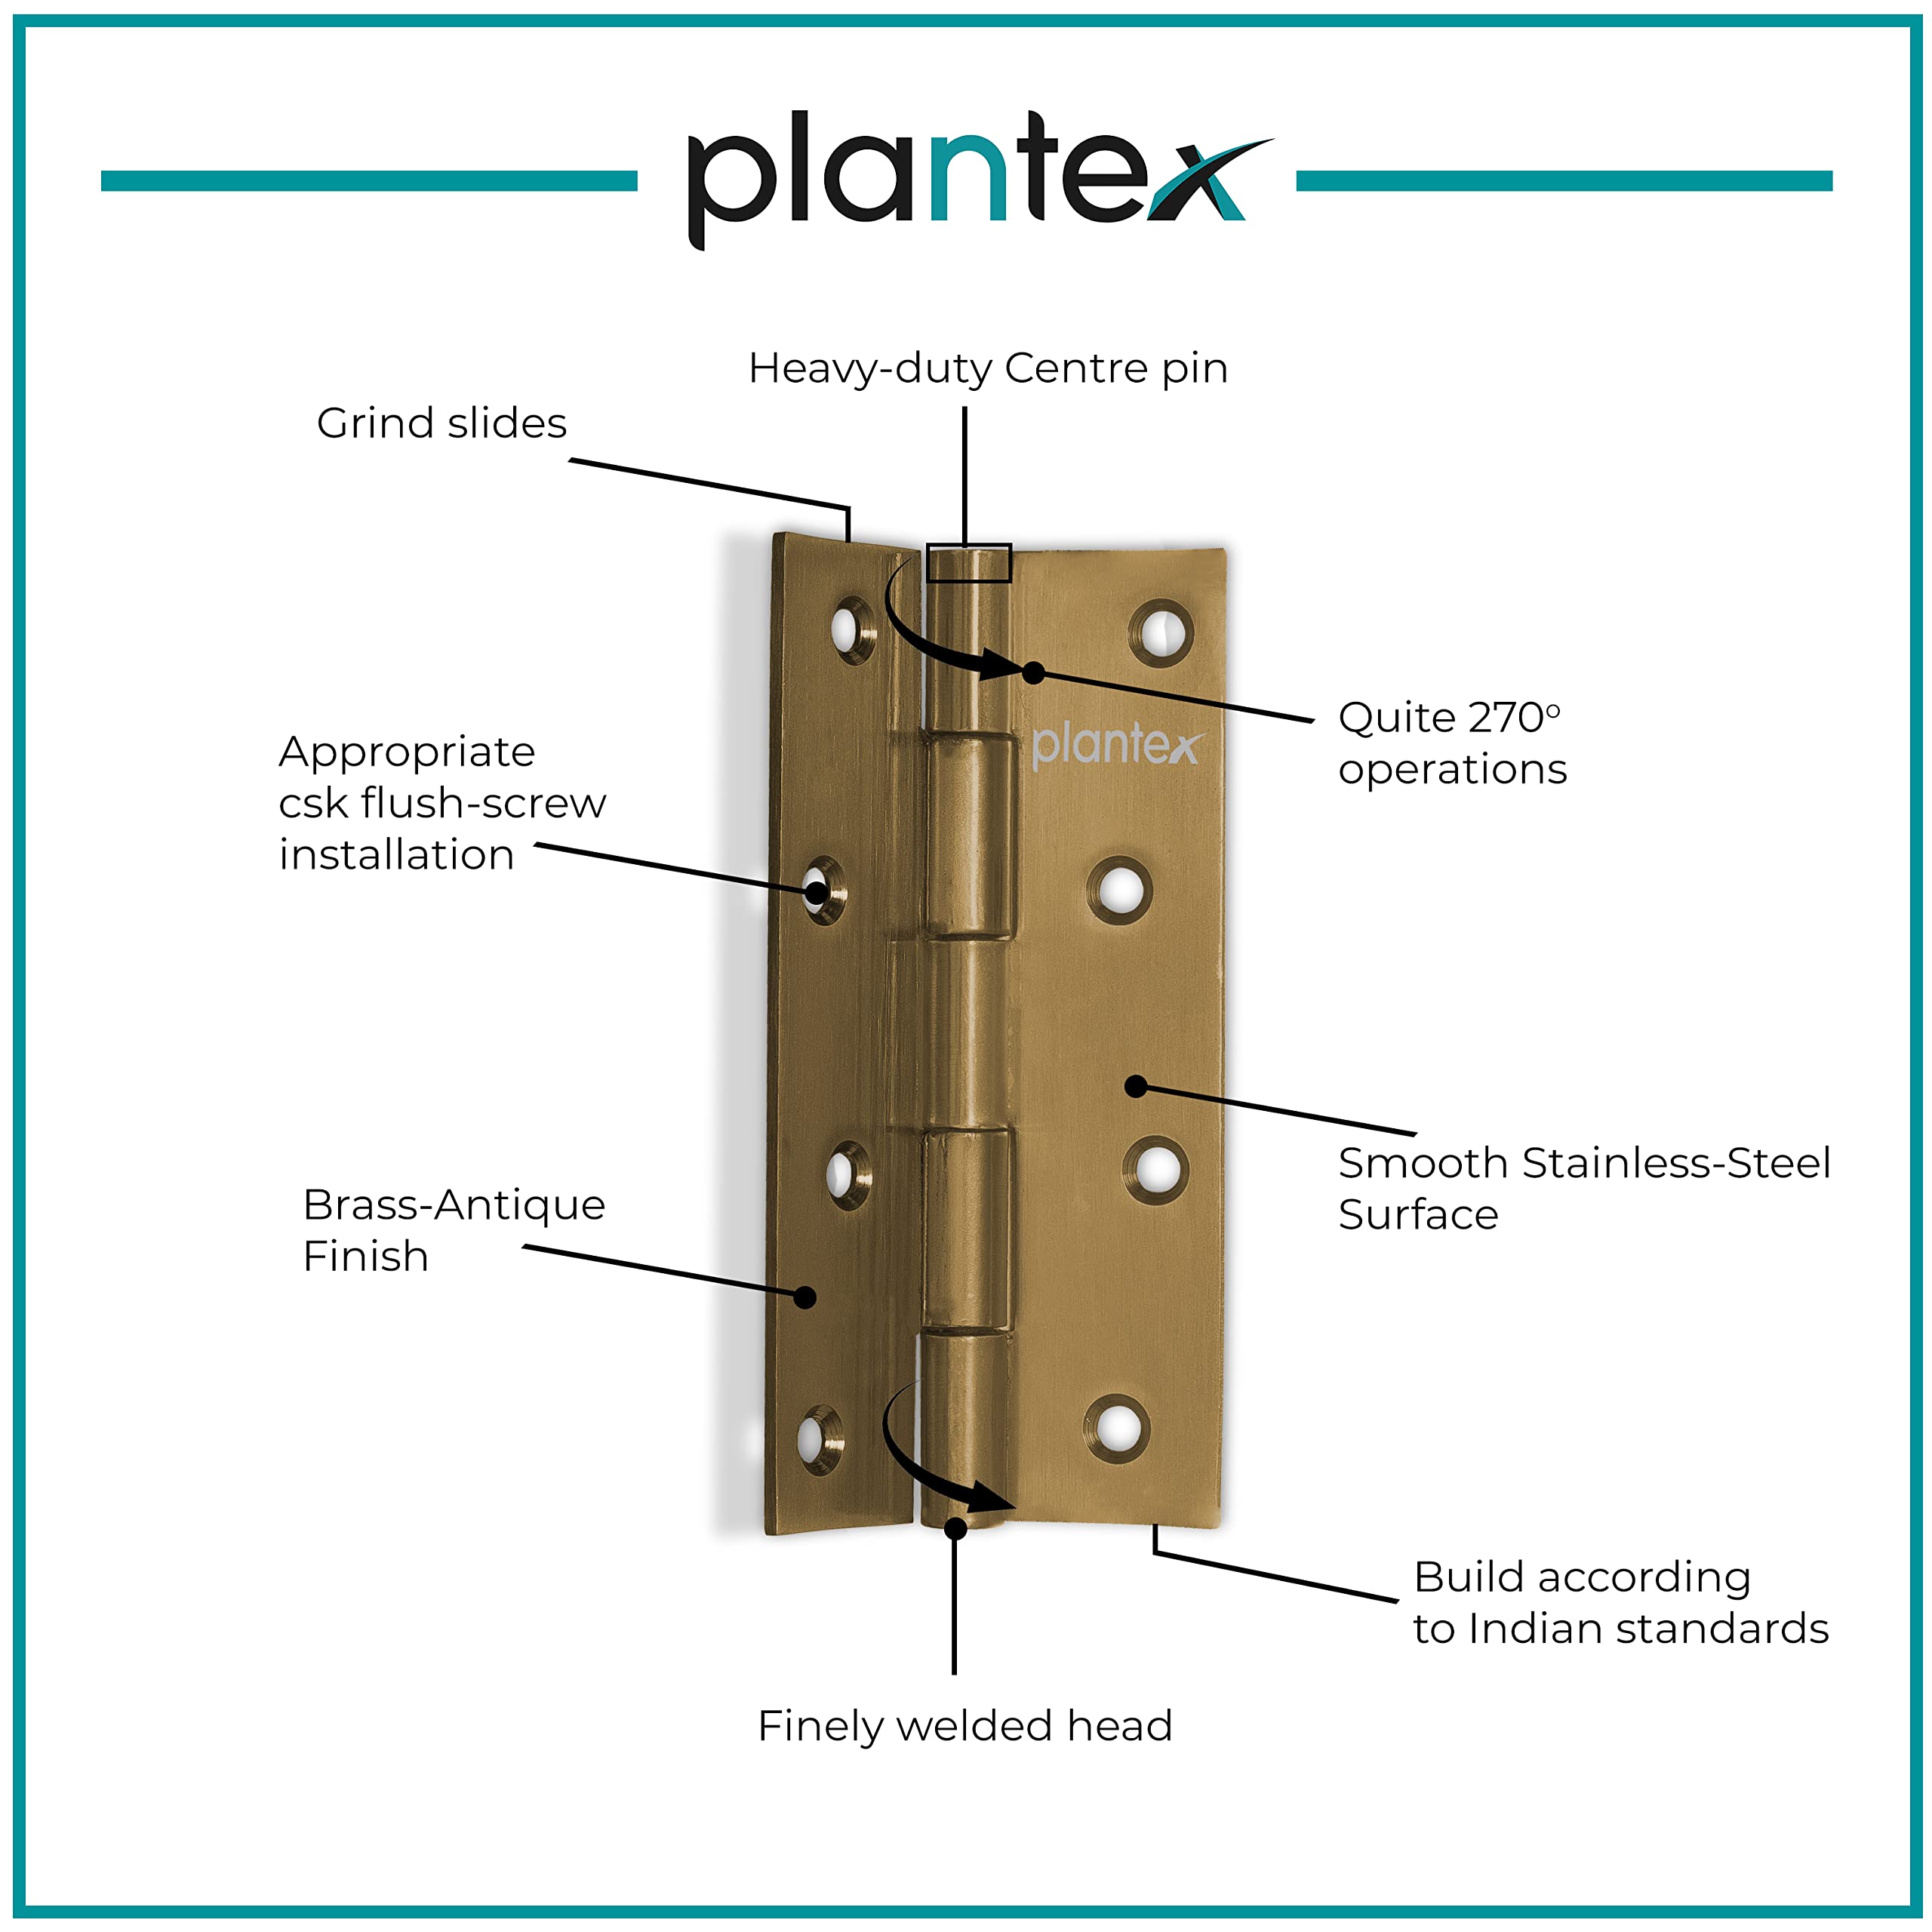 Plantex Heavy Duty Stainless Steel Door Butt Hinges 5 inch x 12 Gauge/2.5 mm Thickness Home/Office/Hotel for Main Door/Bedroom/Kitchen/Bathroom - Pack of 4 (Brass Antique)